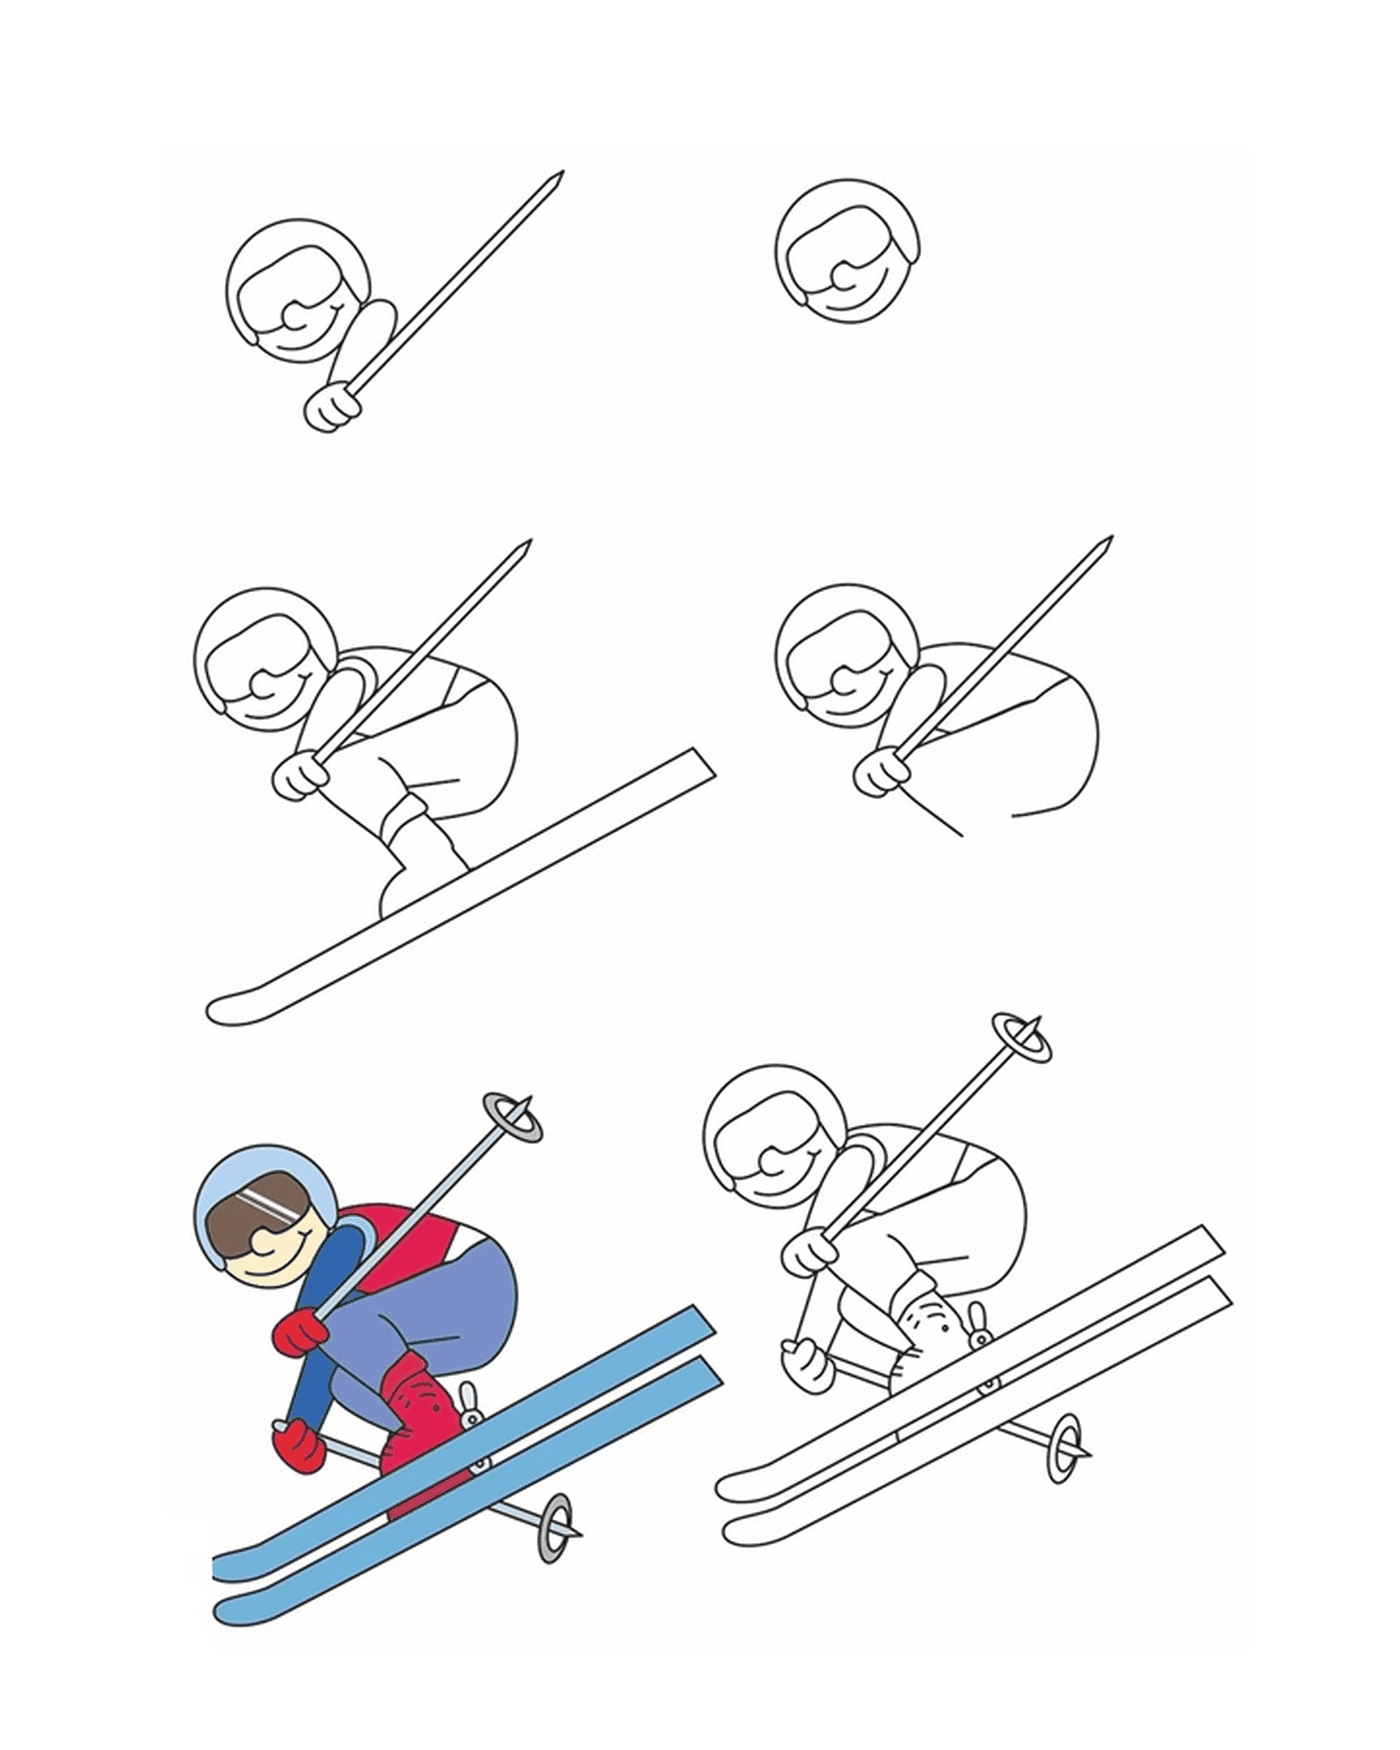  Cómo dibujar el esquí acrobático 